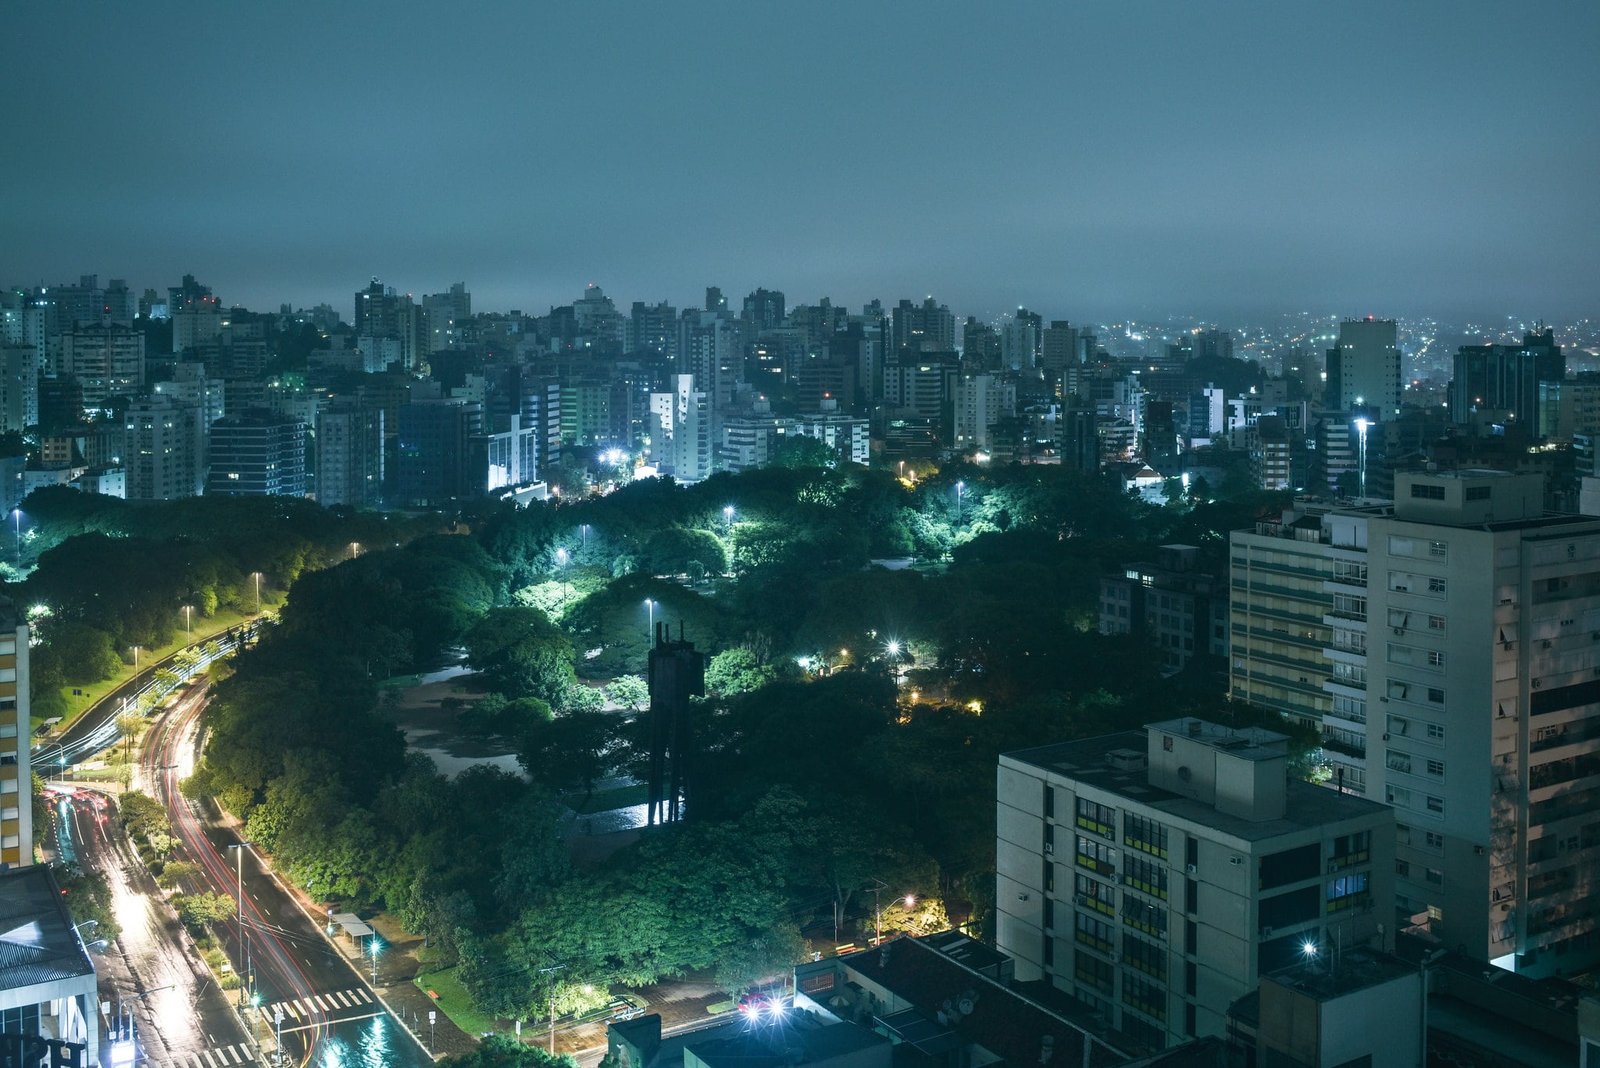 Porto Alegre at night